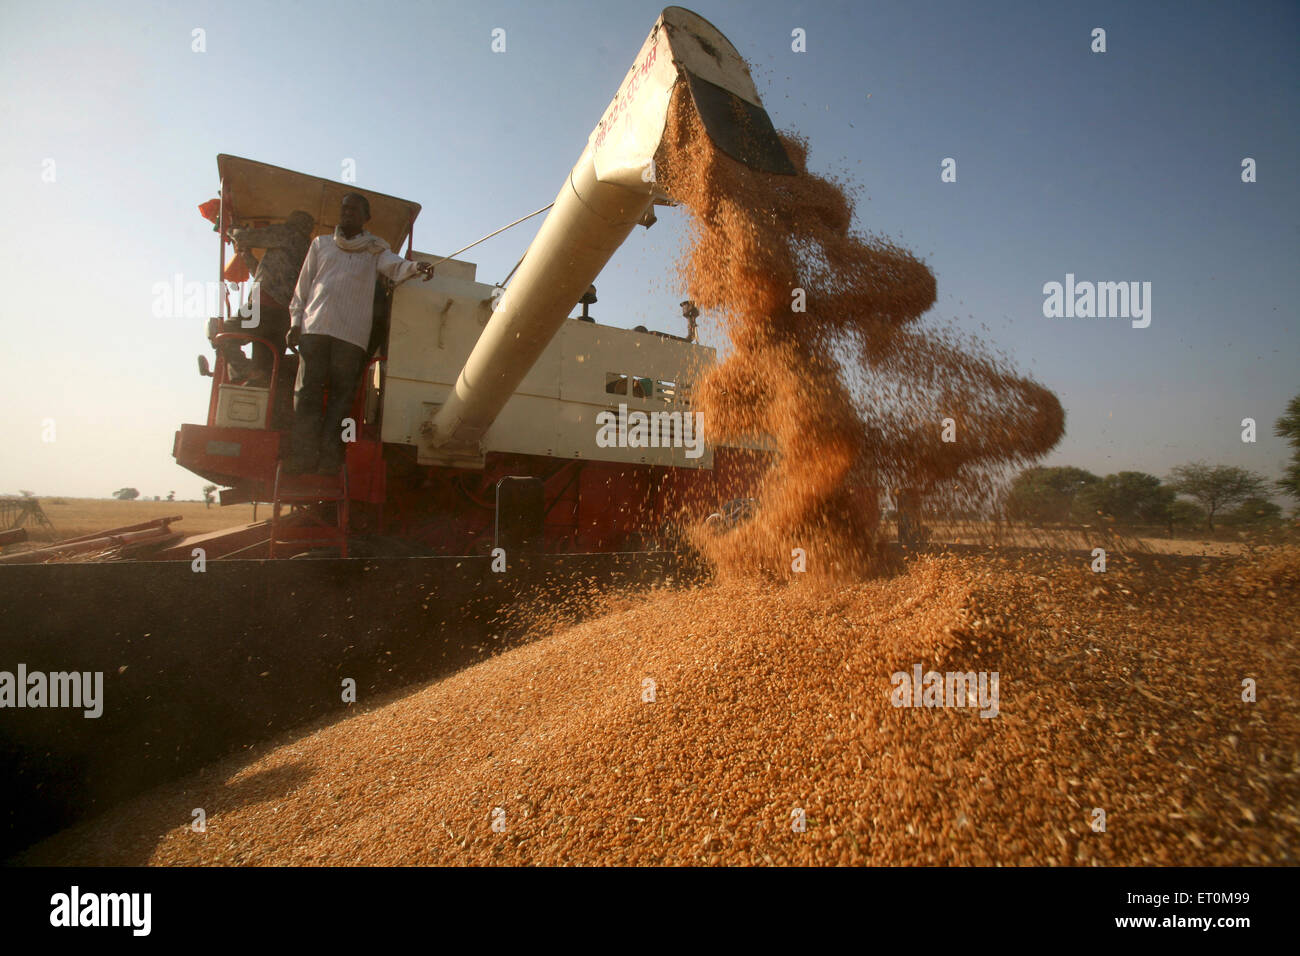 Mietitrebbiatrice azionata da coltivatore che raccoglie grano, Bhopal, Madhya Pradesh, India, Asia Foto Stock